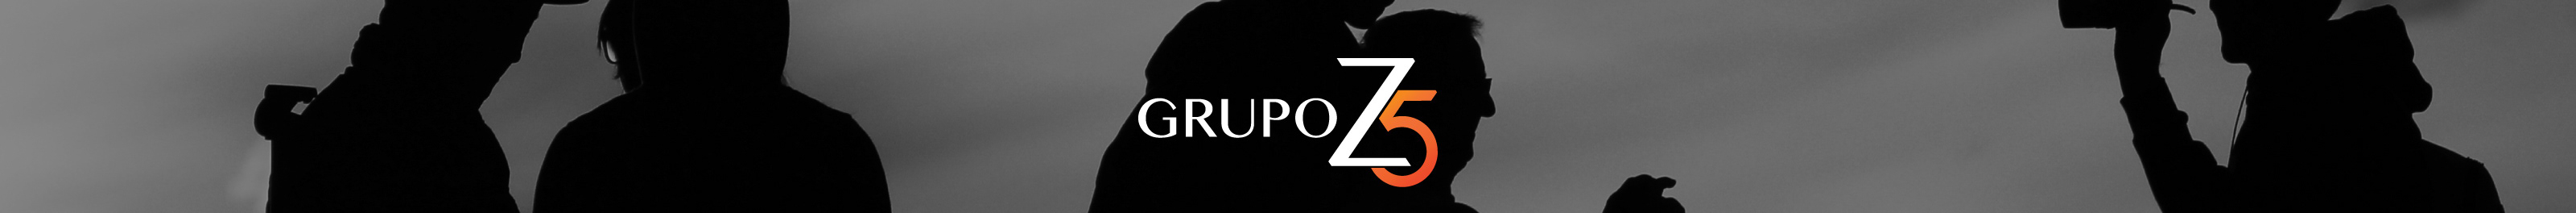 Grupo Z5's profile banner